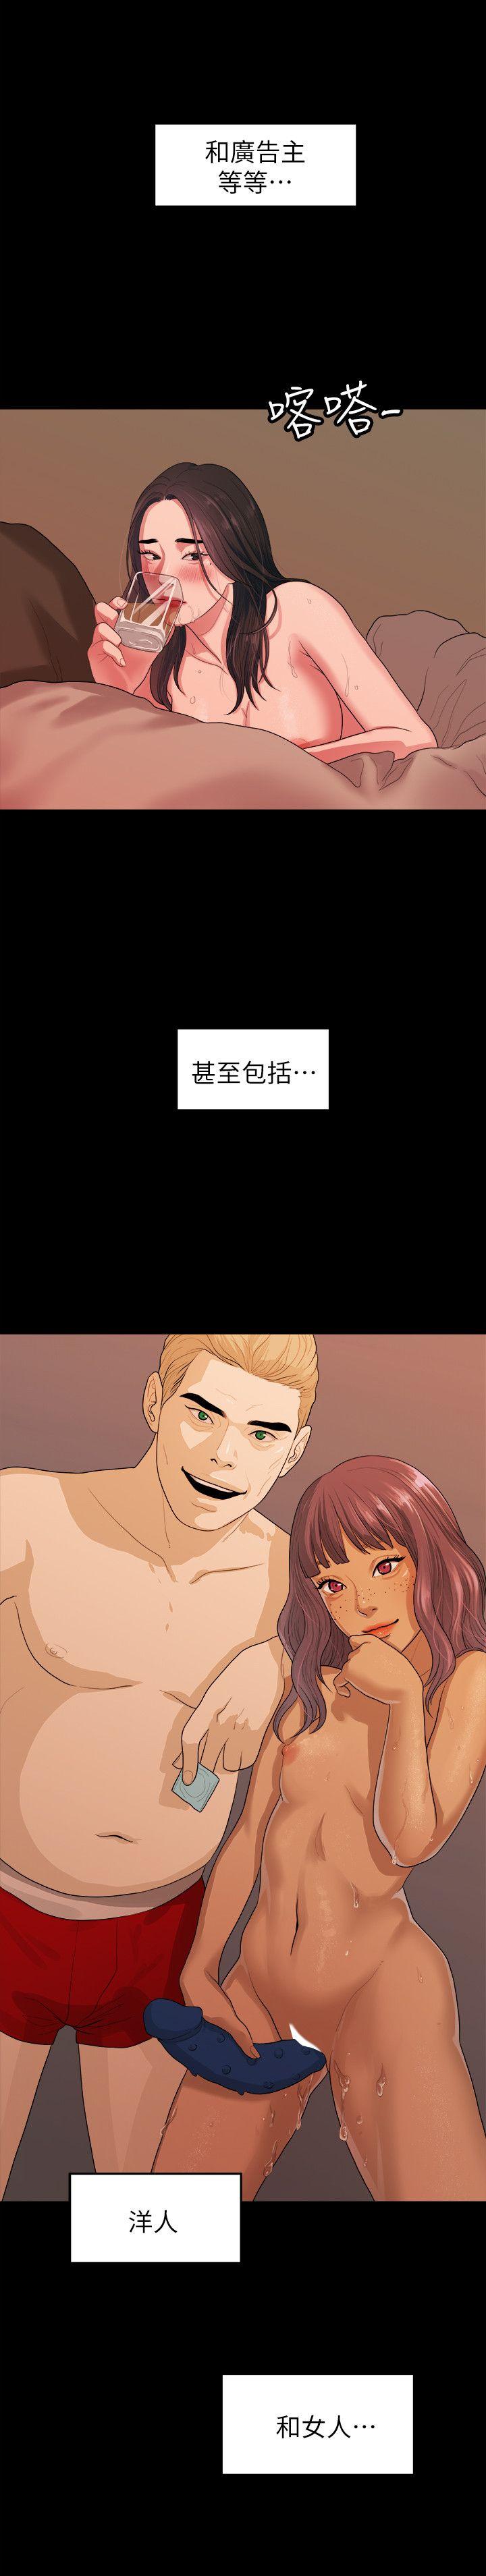 韩国污漫画 我們的非常關系 第37话-圣奎安慰多贤的方法 17